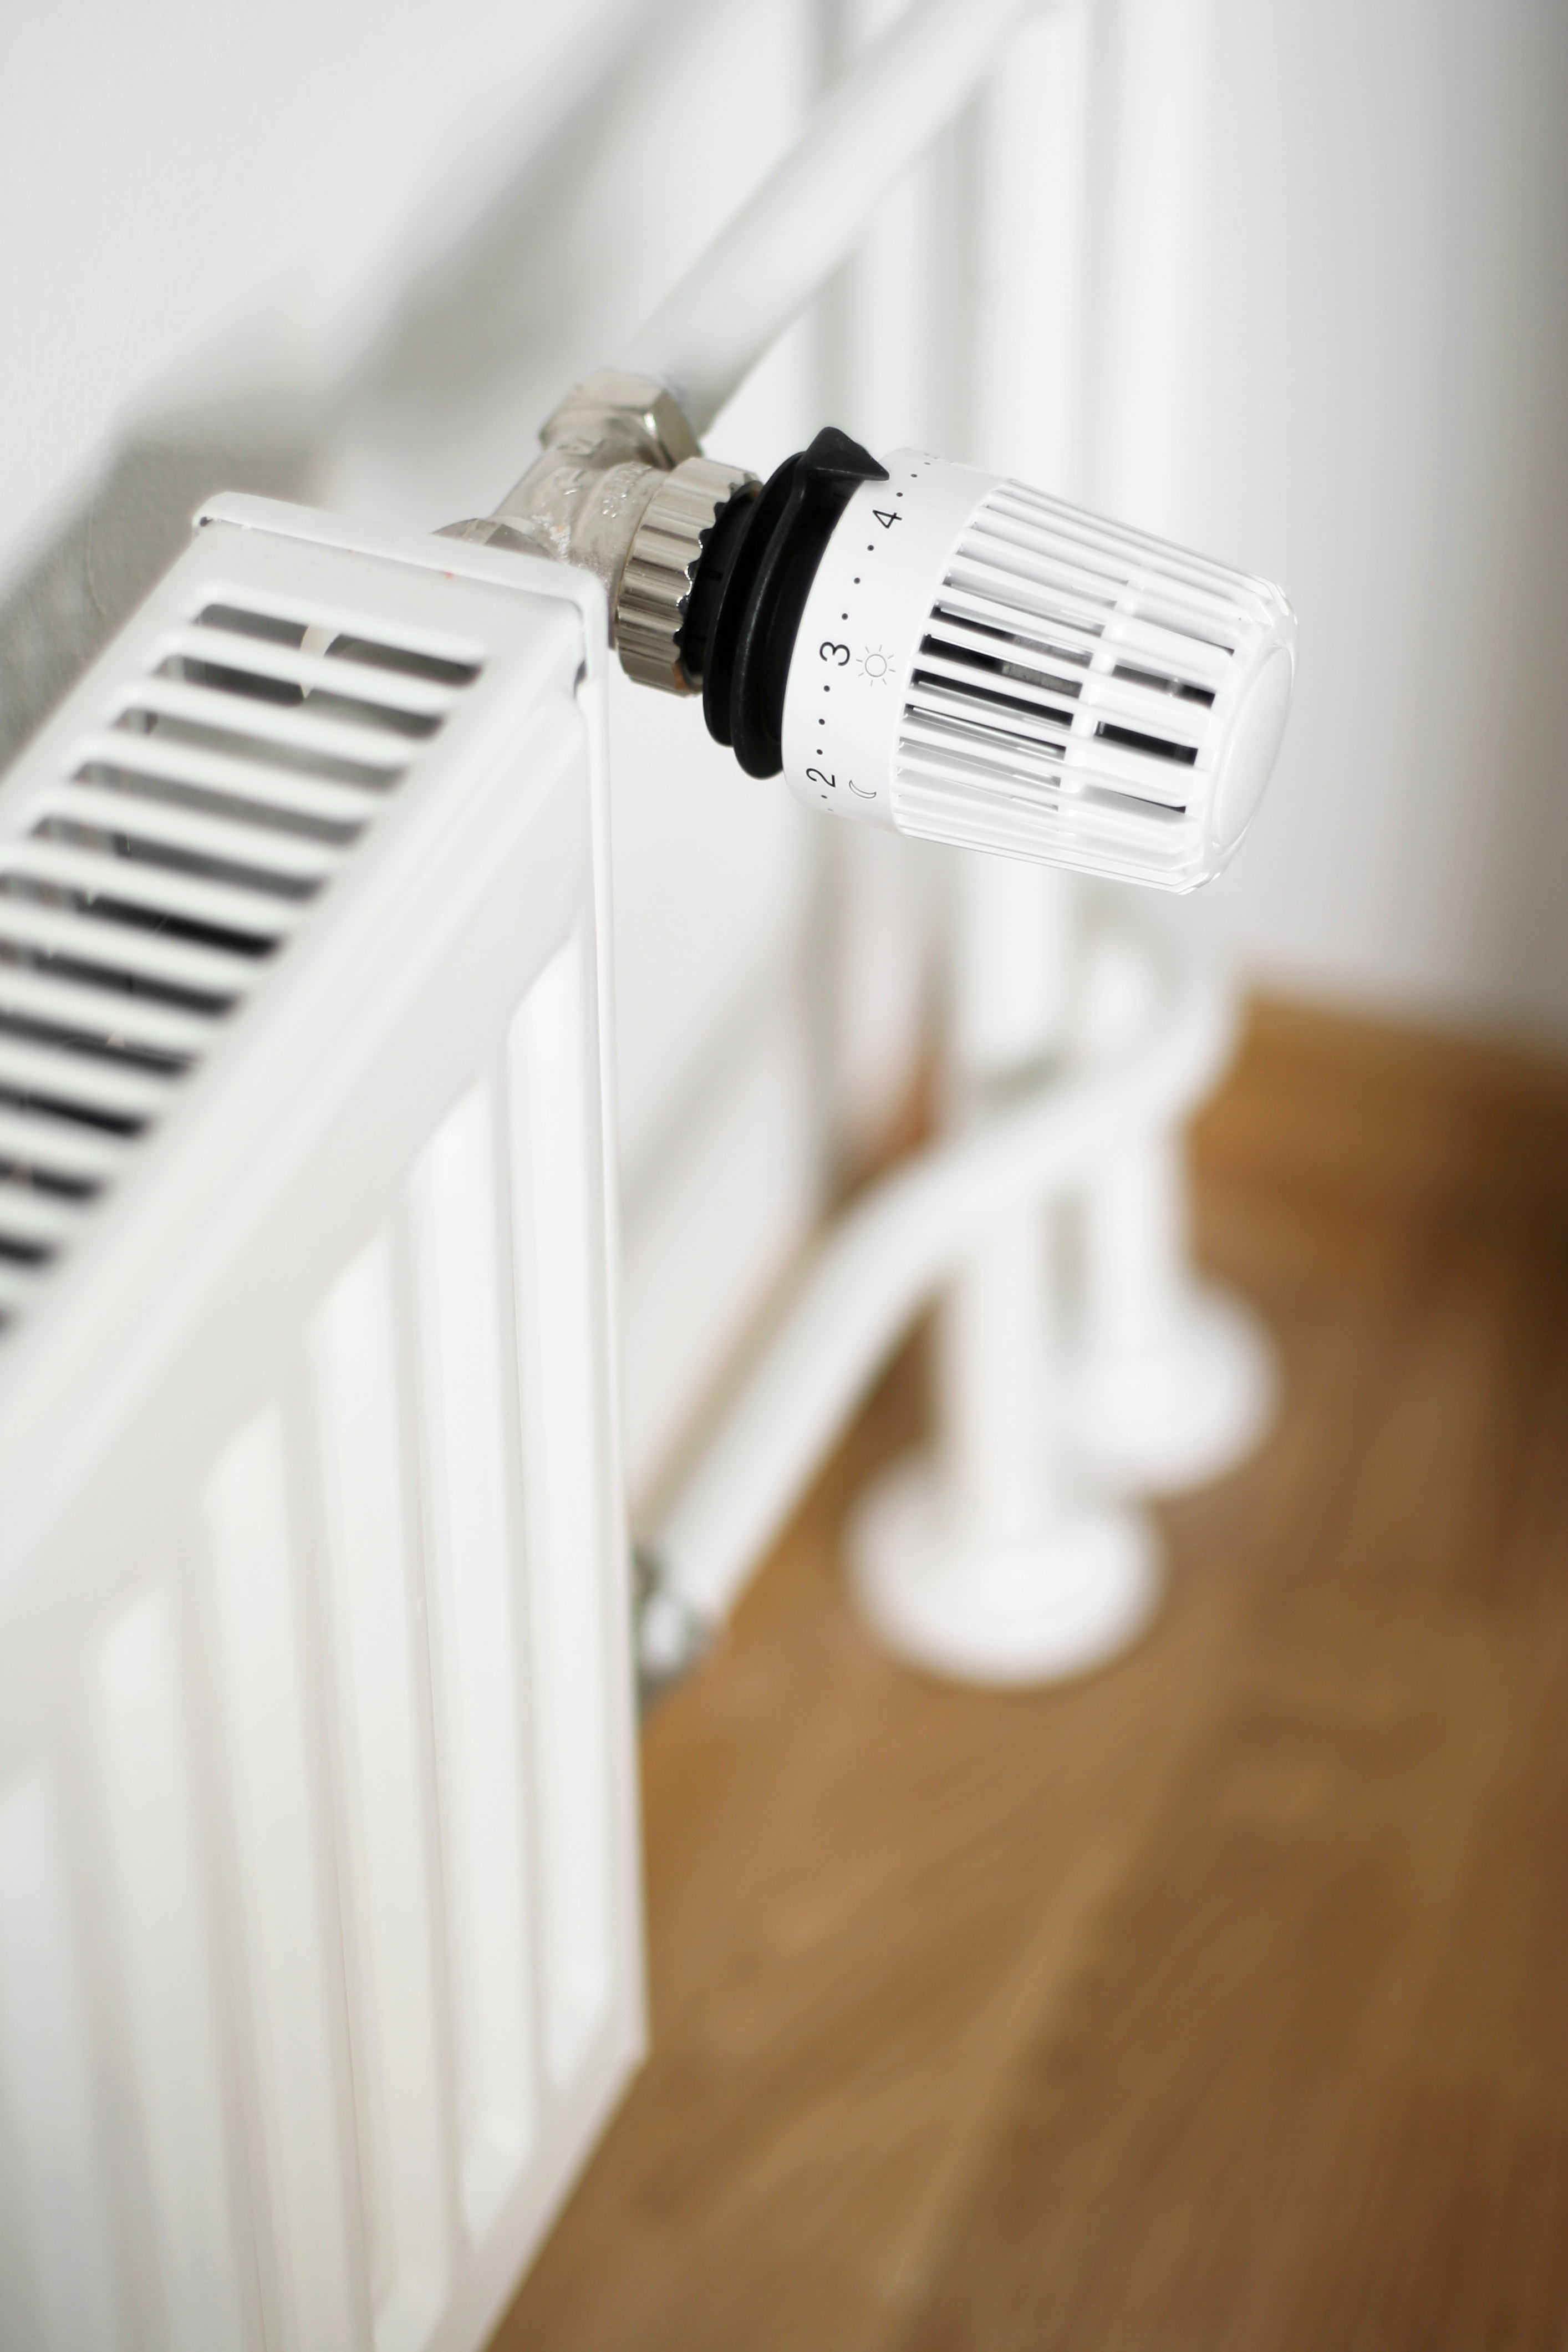 Cómo limpiar un radiador de calefacción?